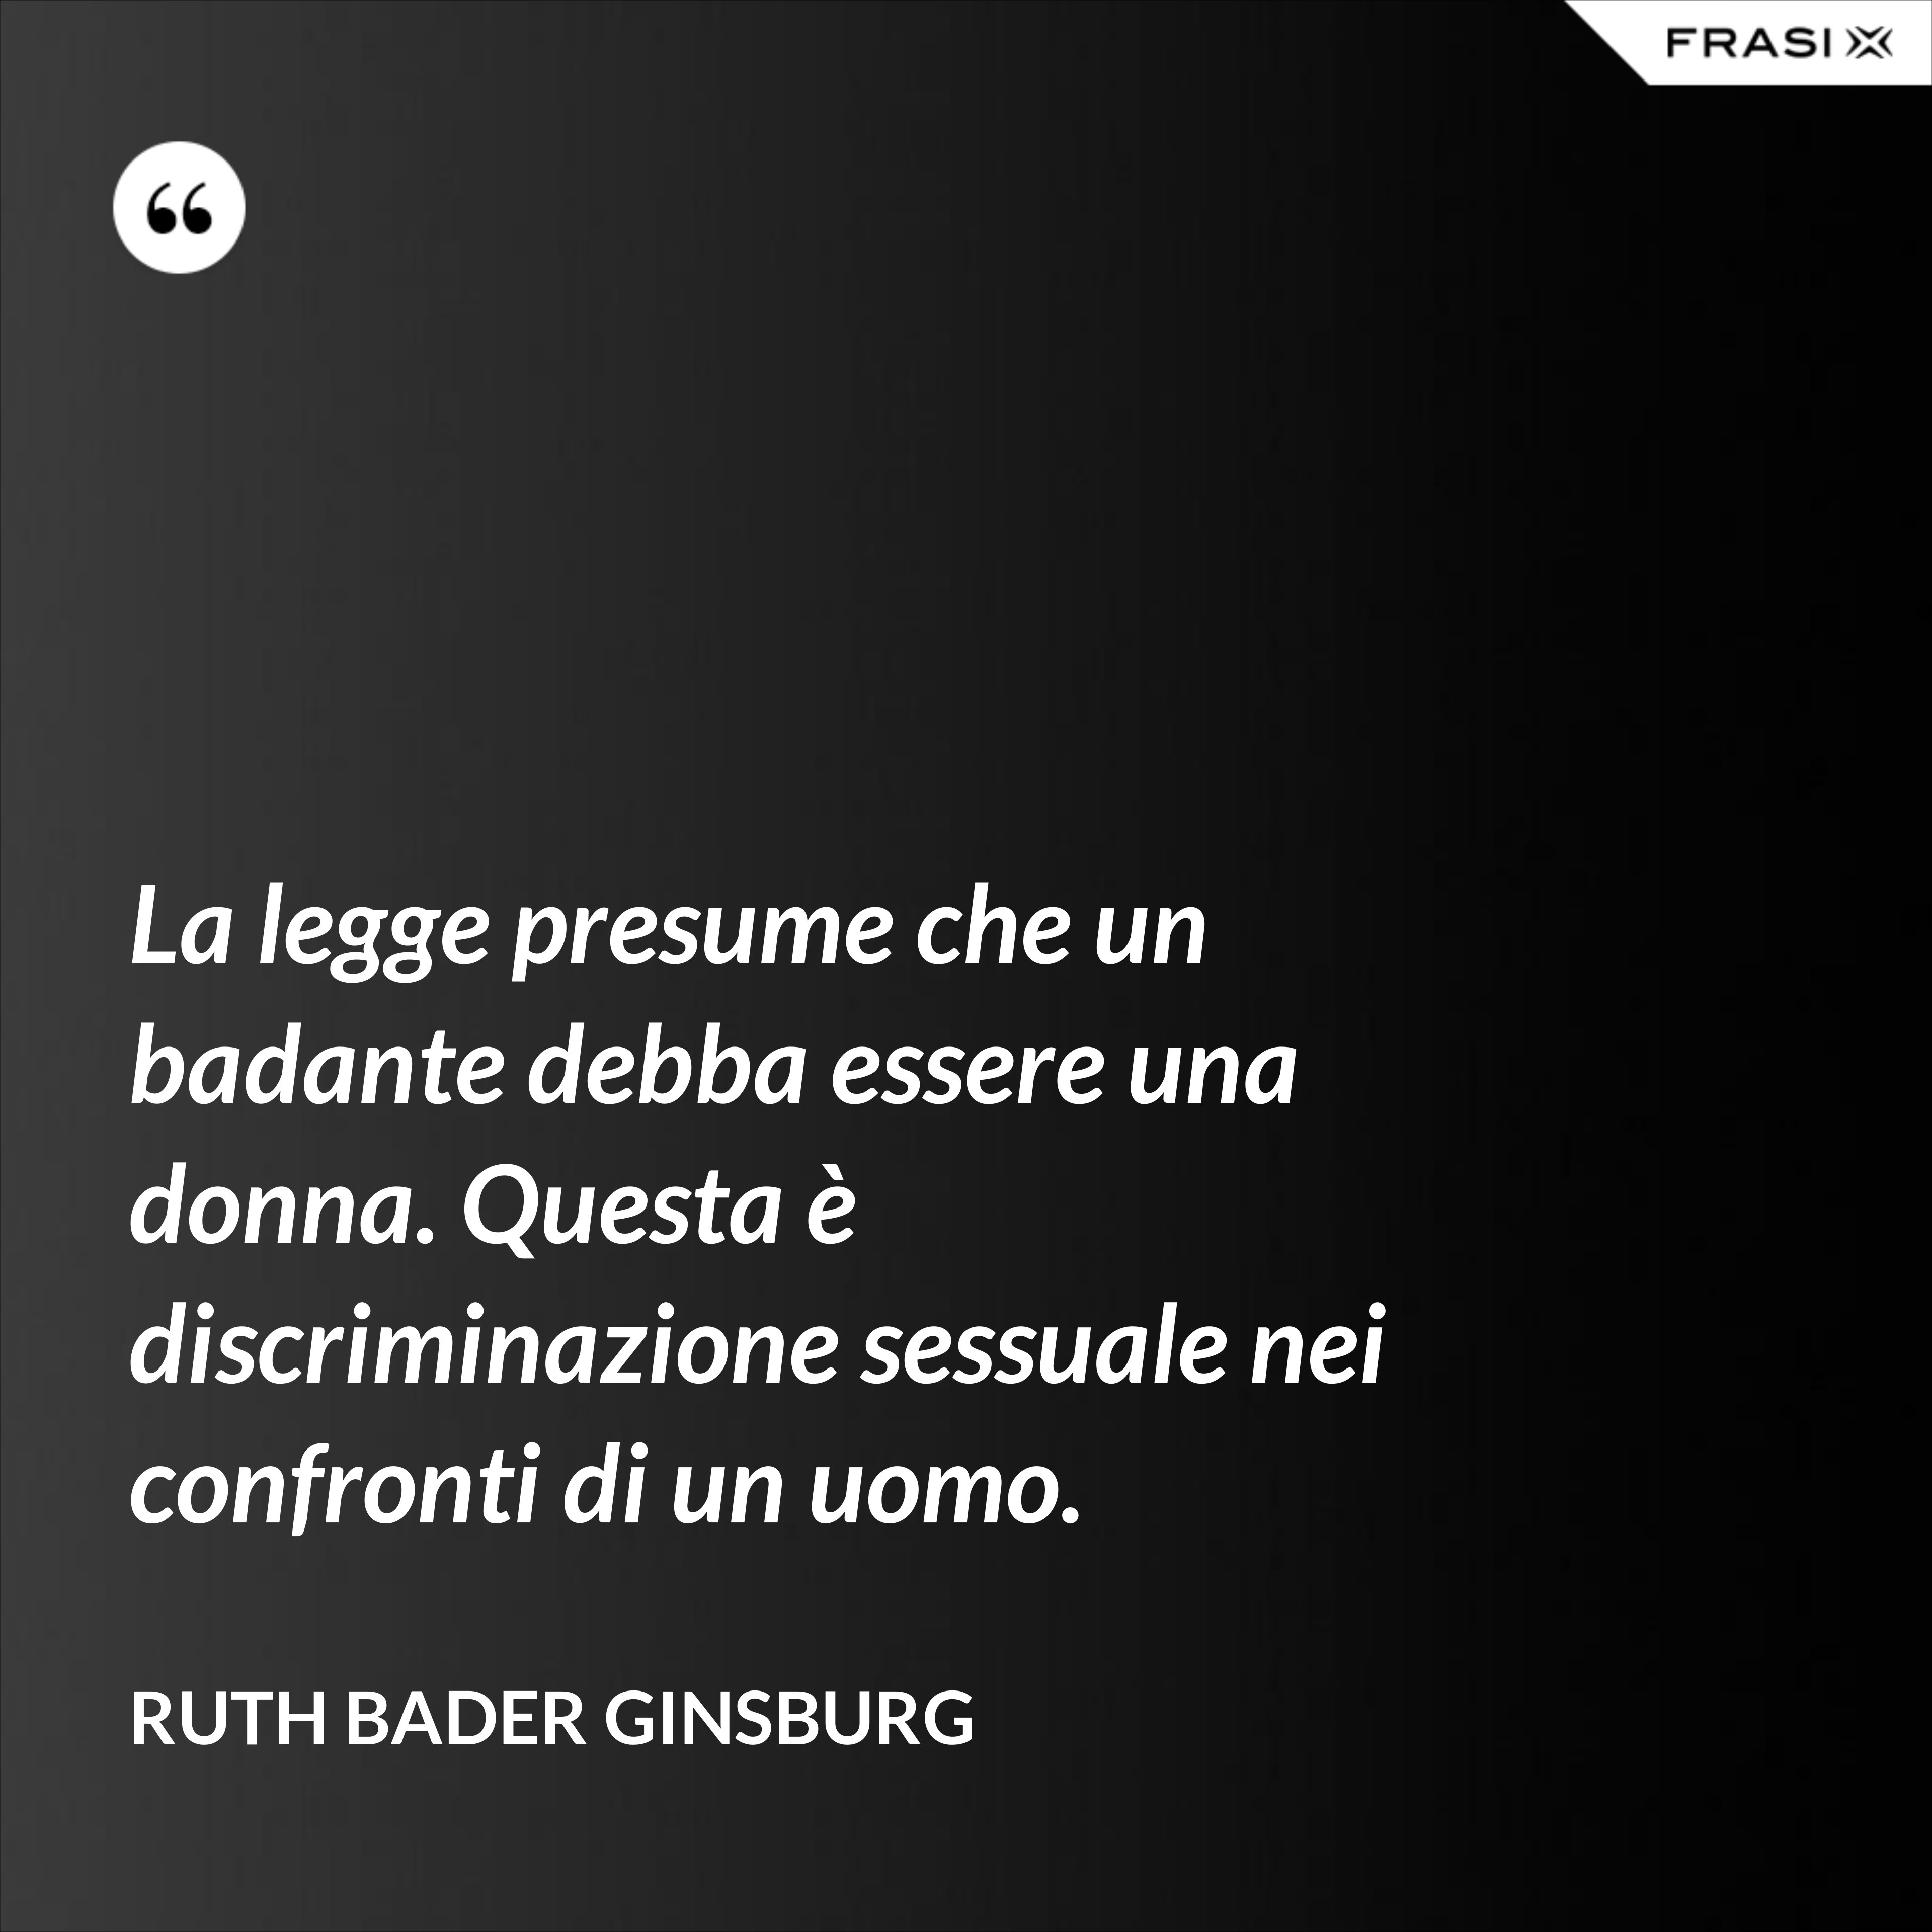 La legge presume che un badante debba essere una donna. Questa è discriminazione sessuale nei confronti di un uomo. - Ruth Bader Ginsburg